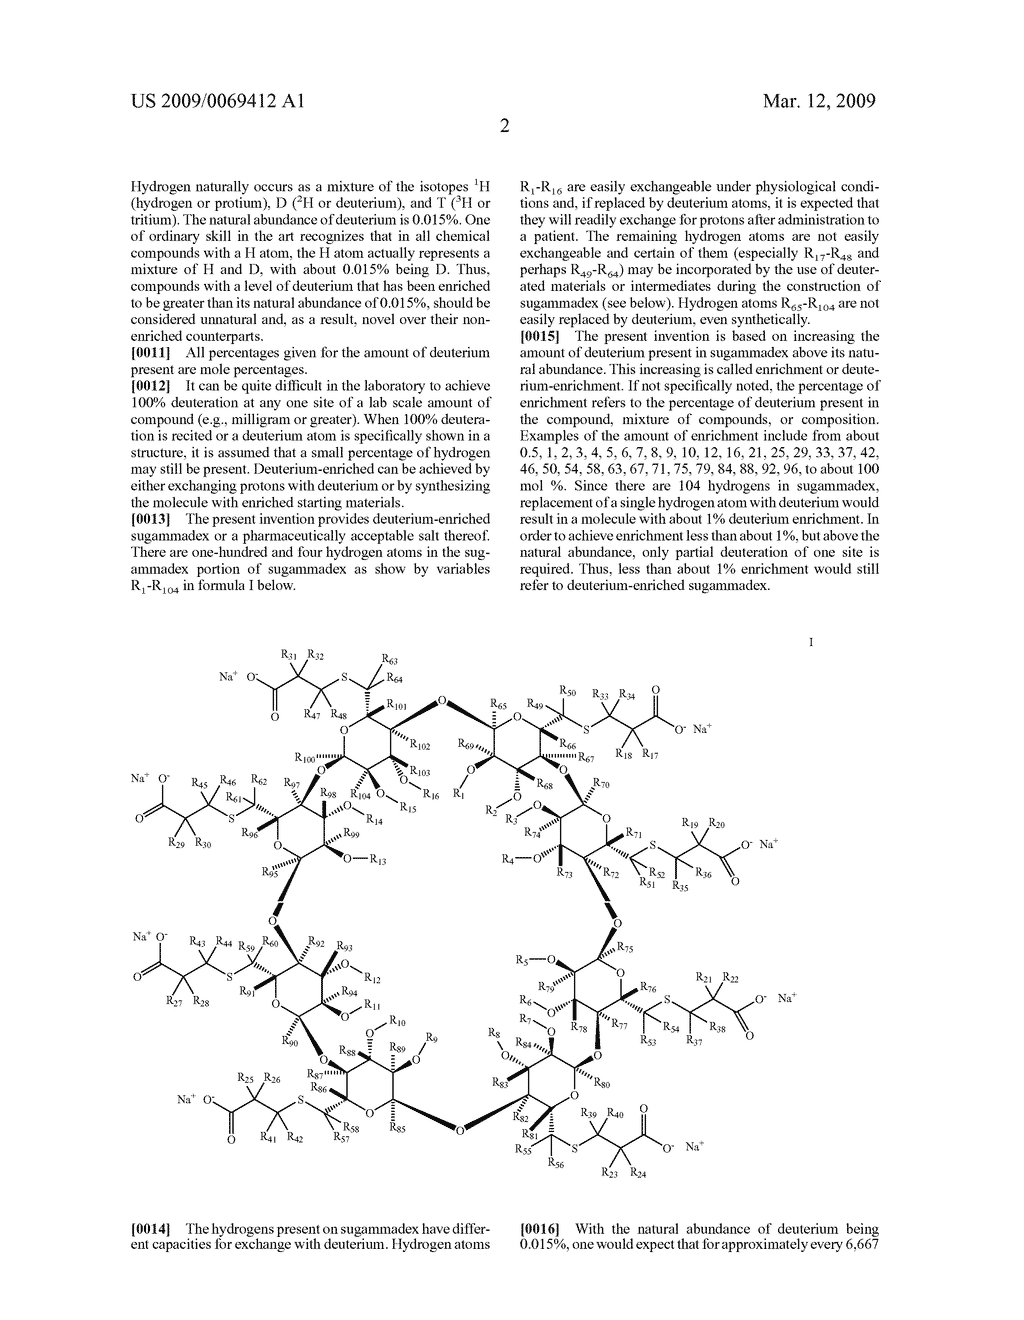 DEUTERIUM-ENRICHED SUGAMMADEX - diagram, schematic, and image 03